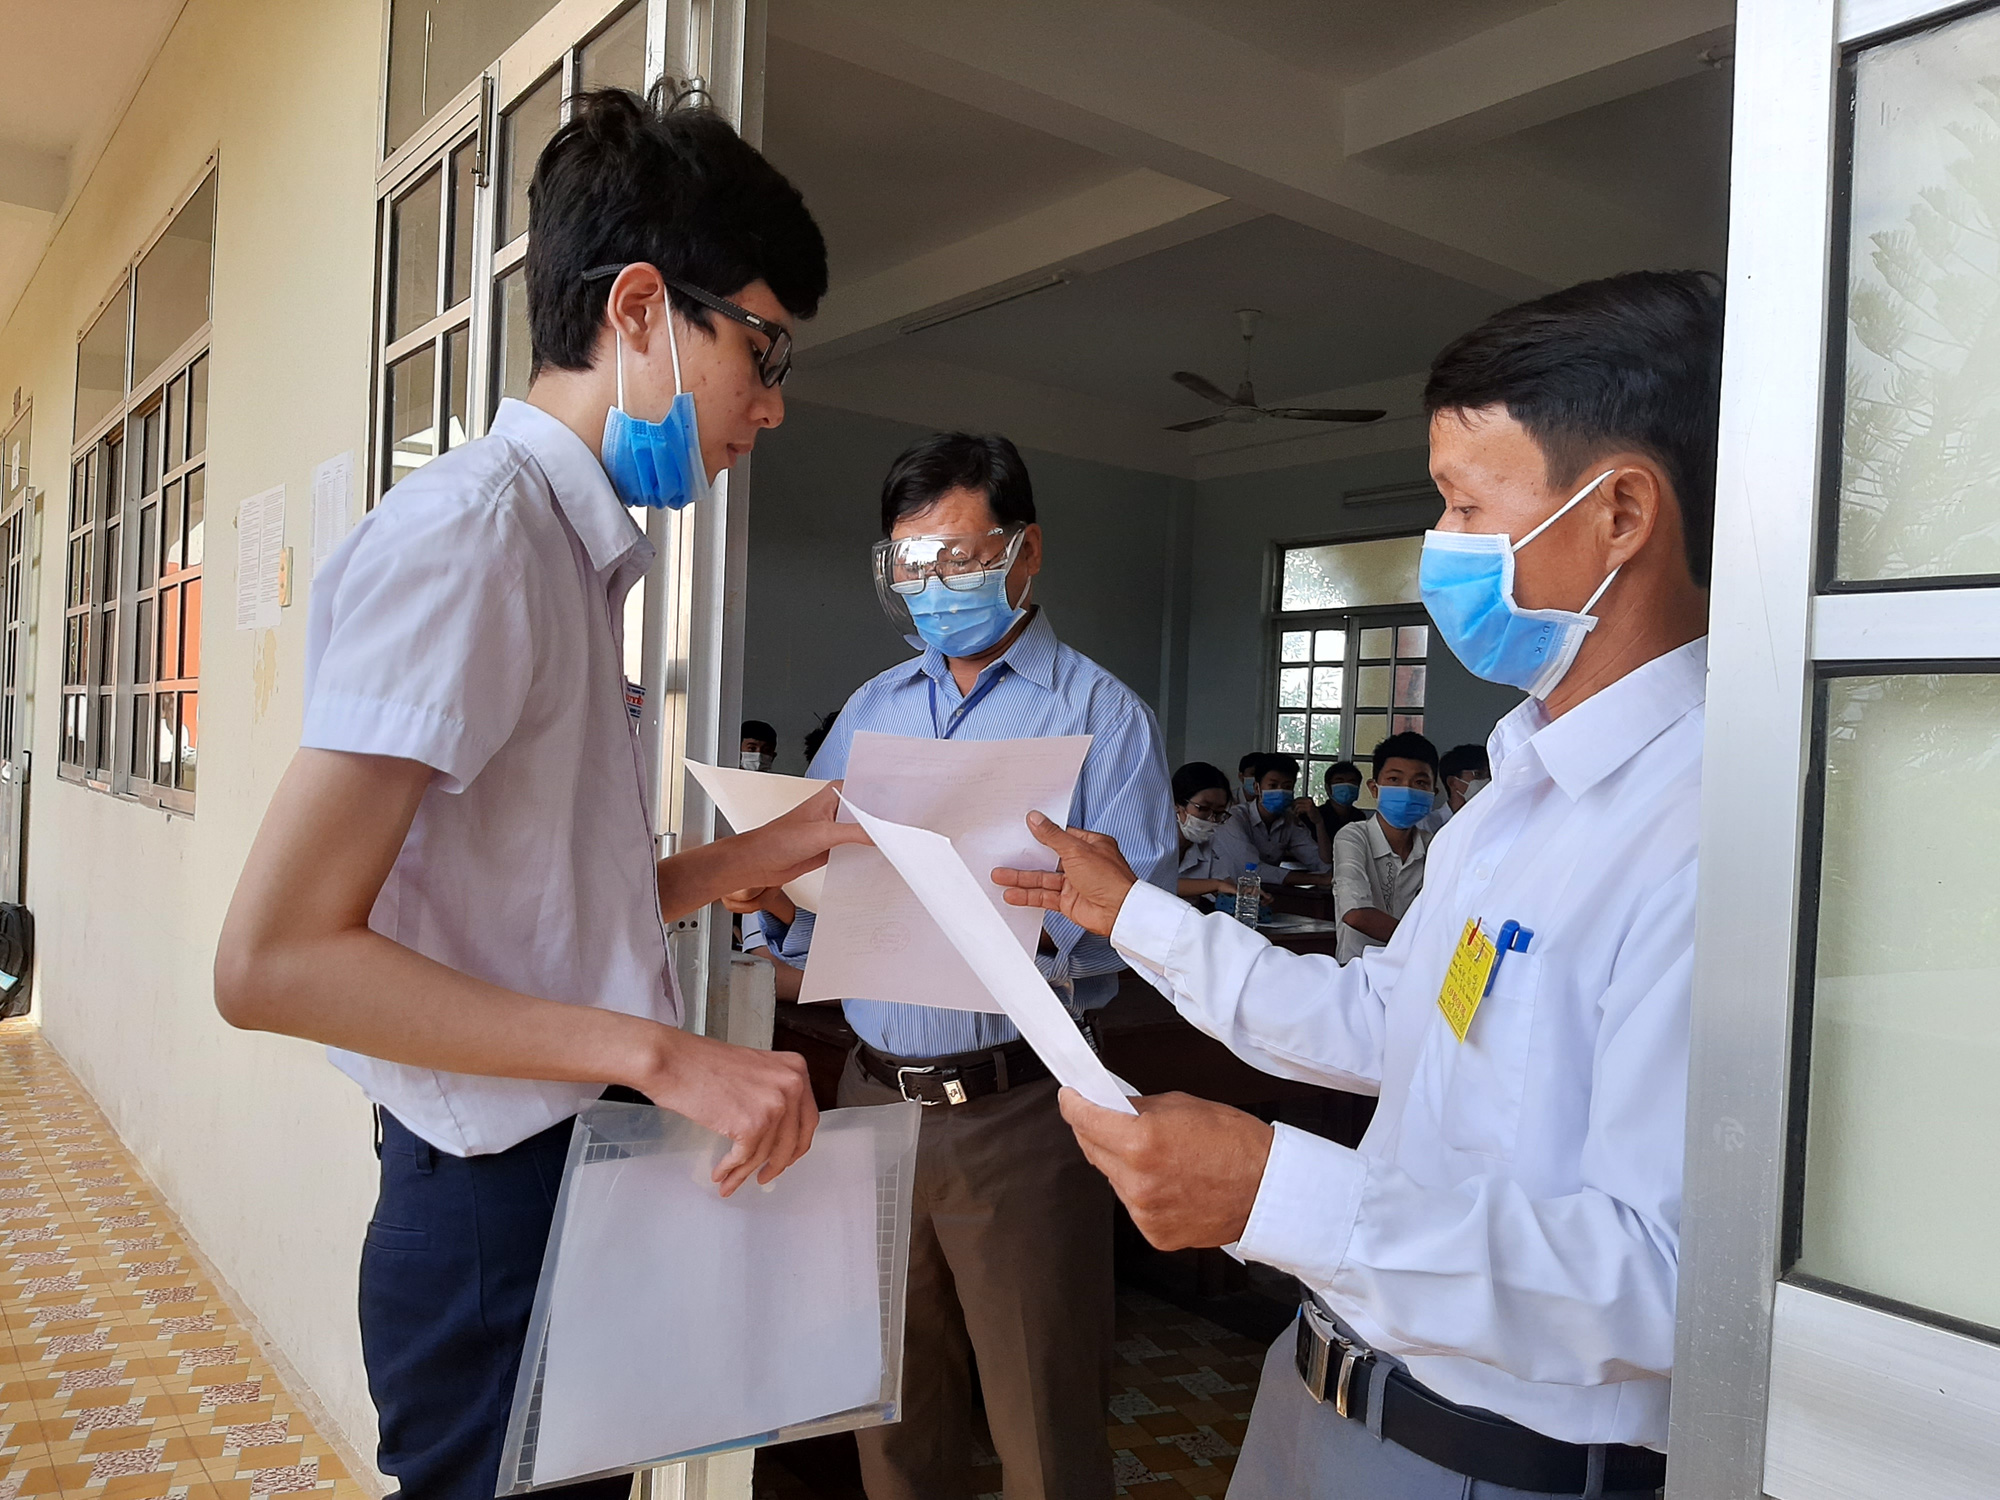 Phú Yên: Khẩn cấp hủy 2/26 điểm thi tốt nghiệp THPT vì có ca nghi ngờ nhiễm Covid-19 - Ảnh 1.